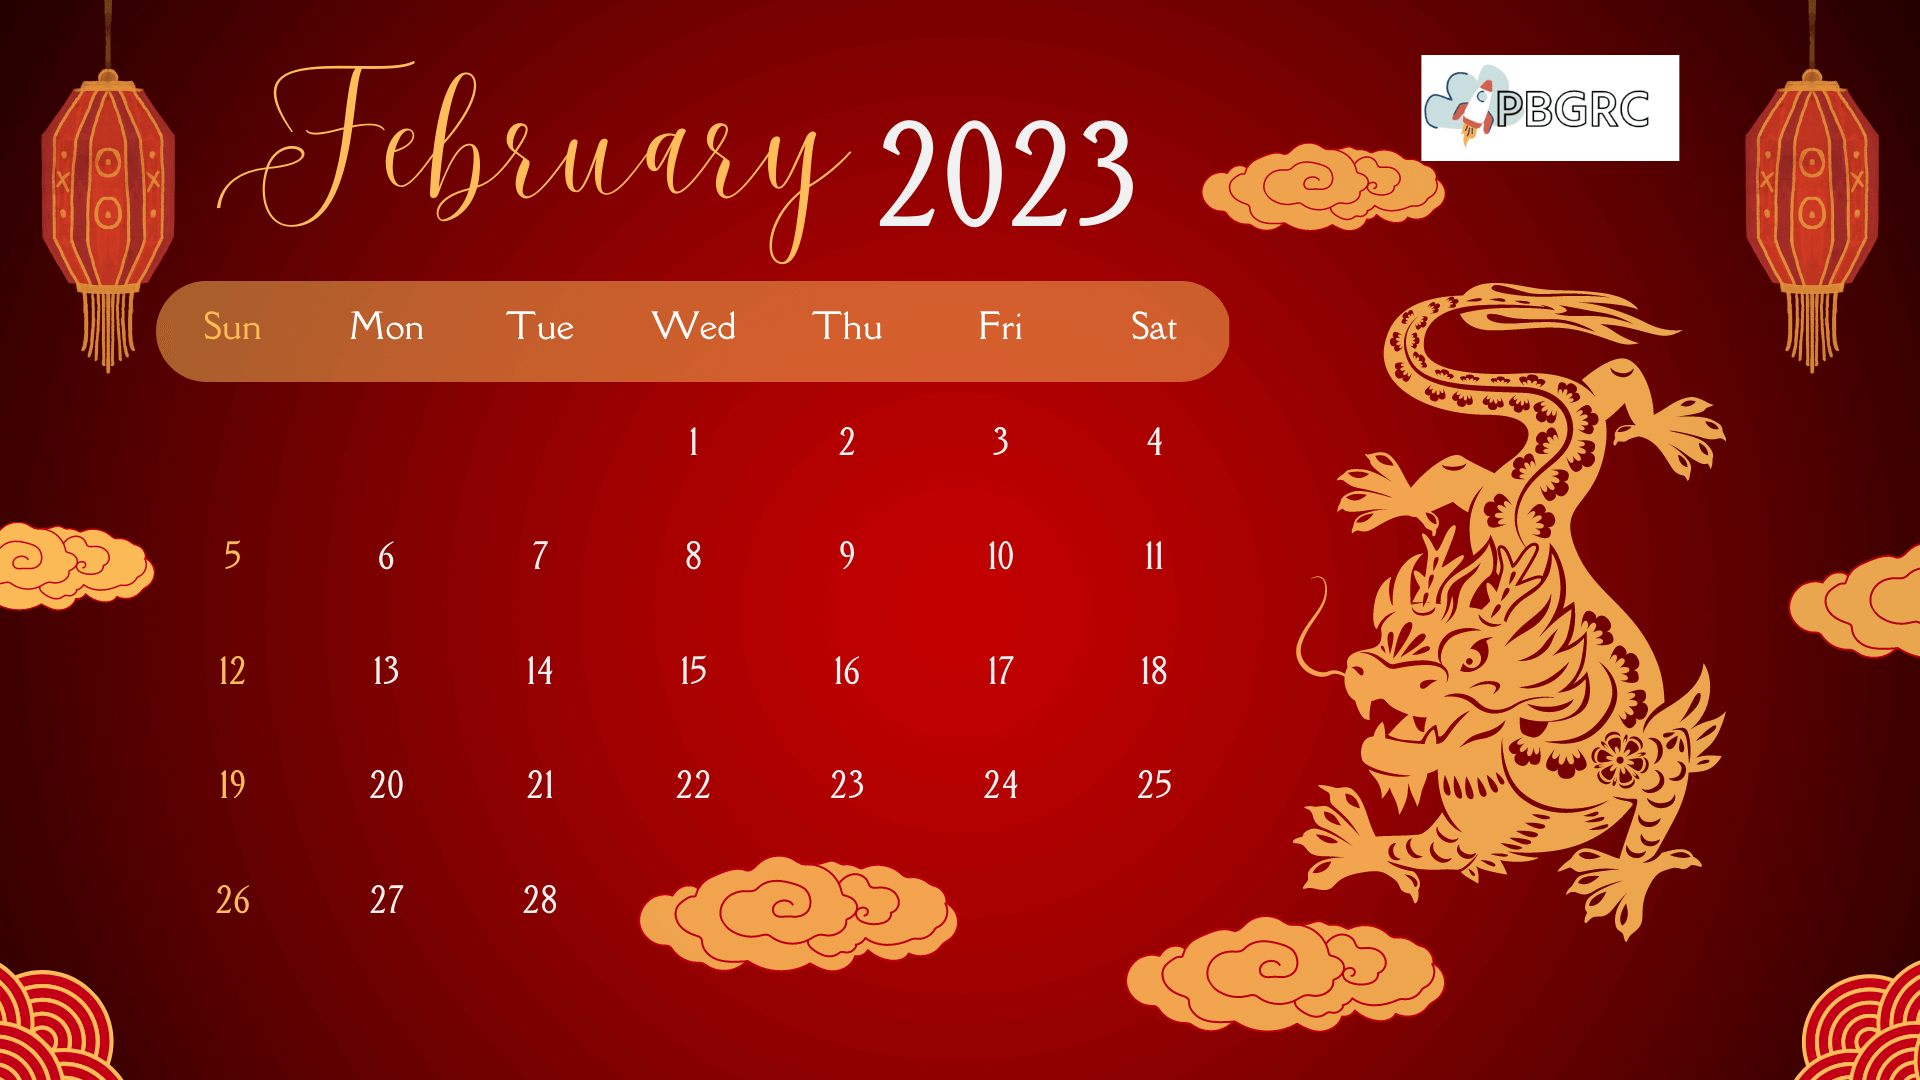 Chinese February 2023 Calendar